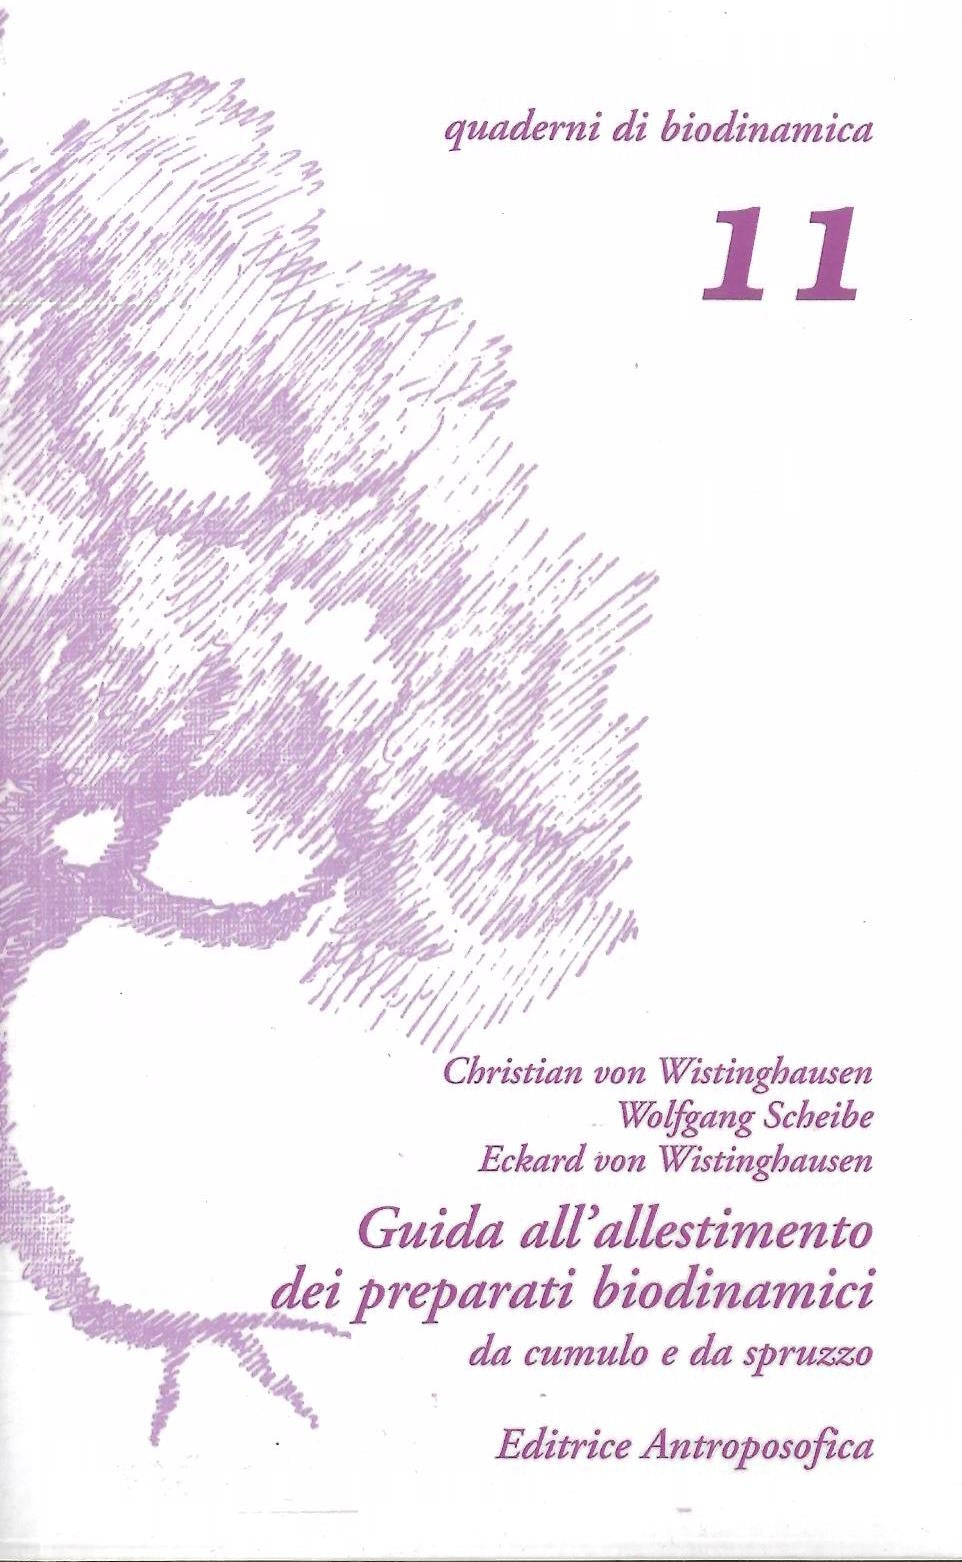 Guida all'allestimento dei preparati biodinamici da cumulo e da spruzzo - von Wistinghausen Ch. e E.